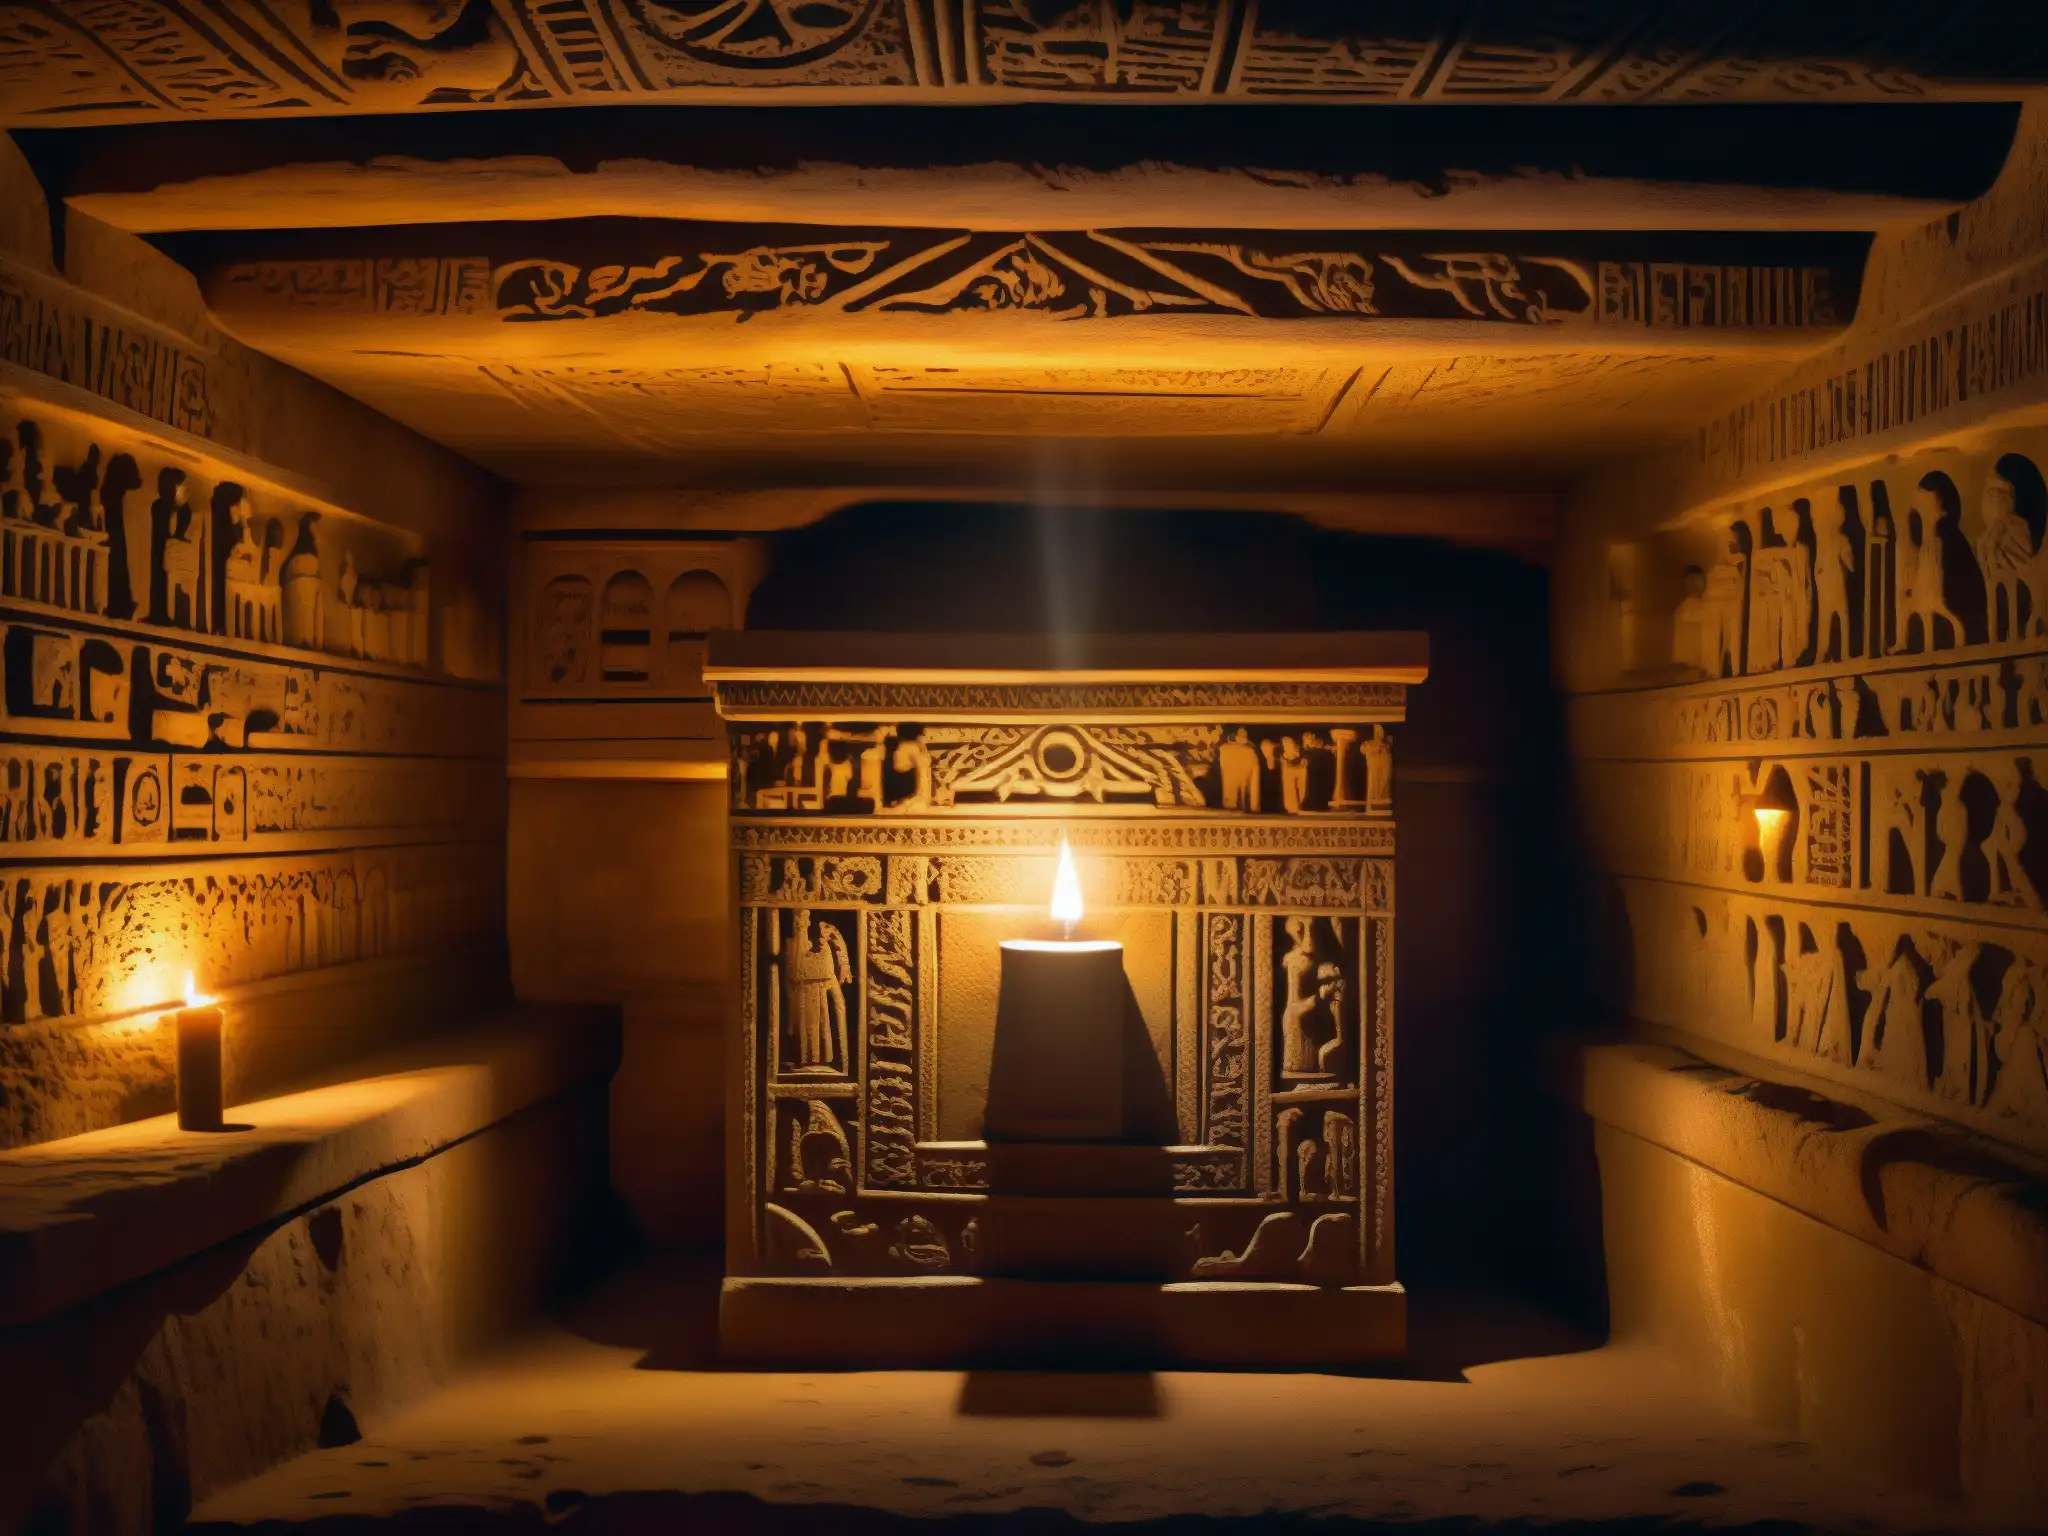 Un misterioso sarcófago iluminado por la luz que entra desde arriba en una cámara subterránea